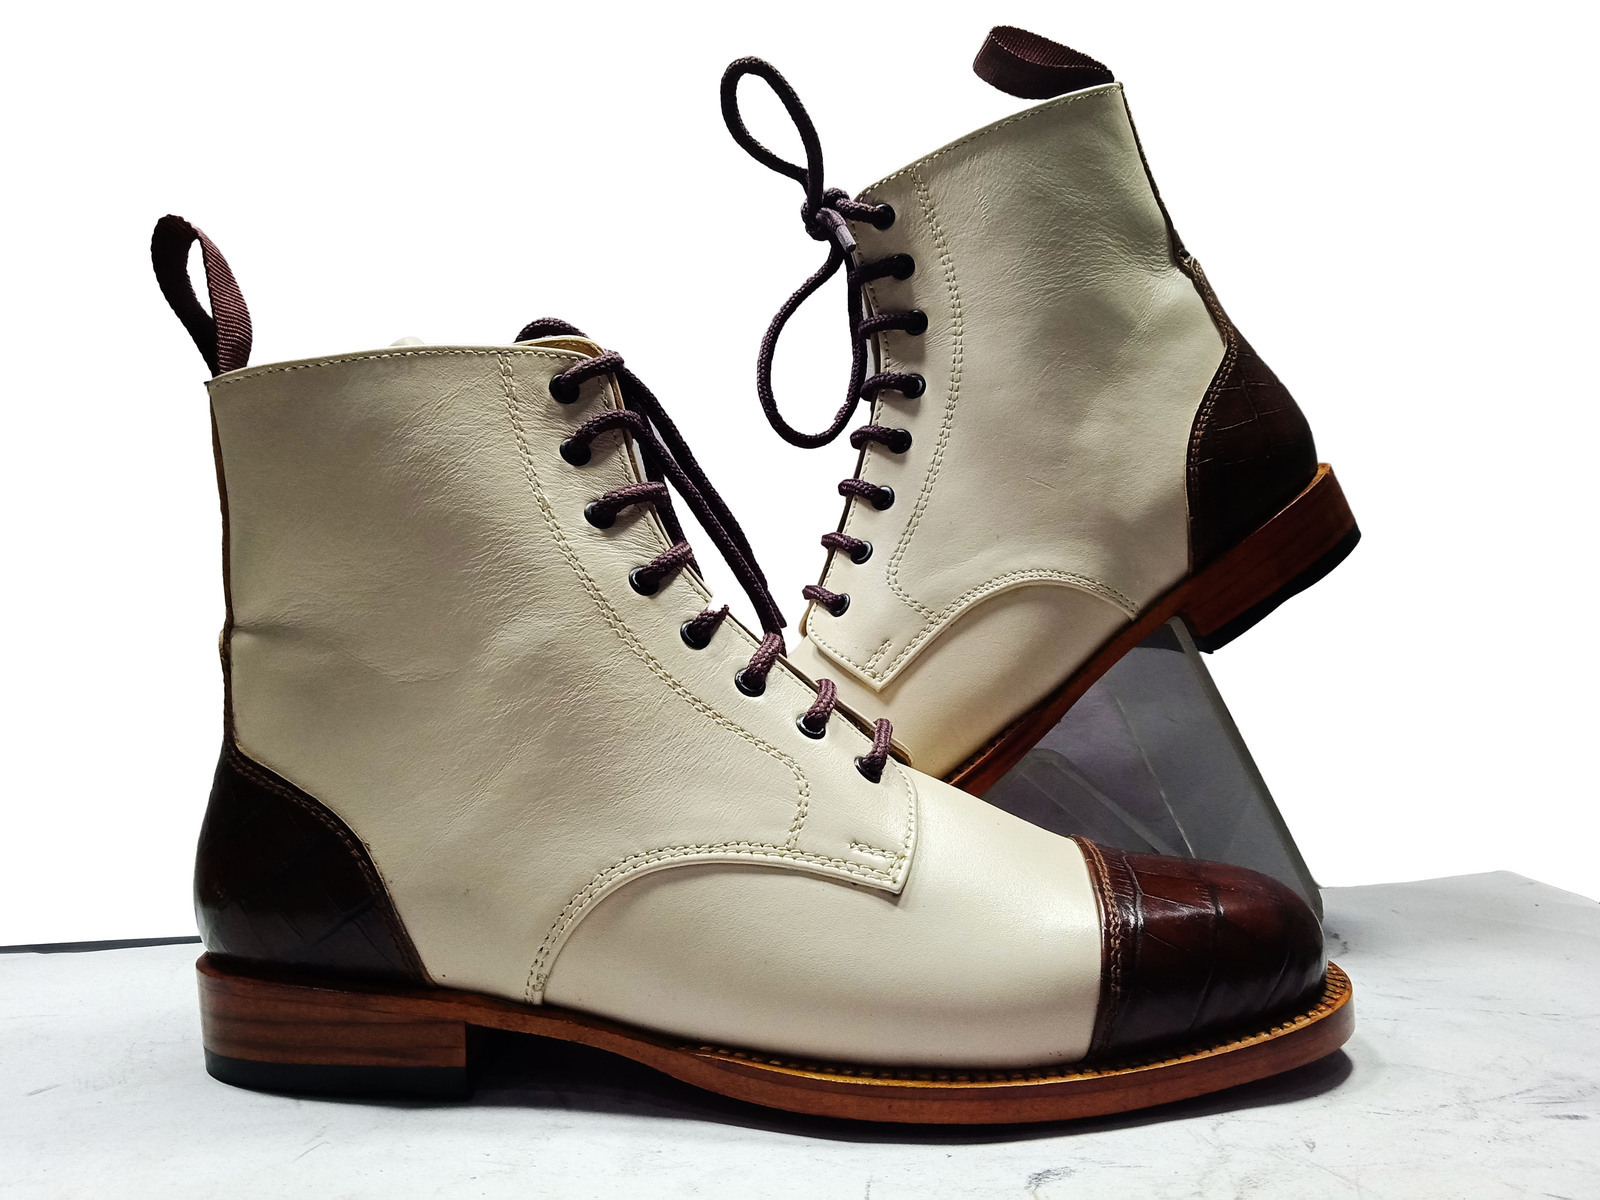 New Handmade Men's Ankle High Boot,Men's White Burgundy Tone Leather Cap Toe Bo